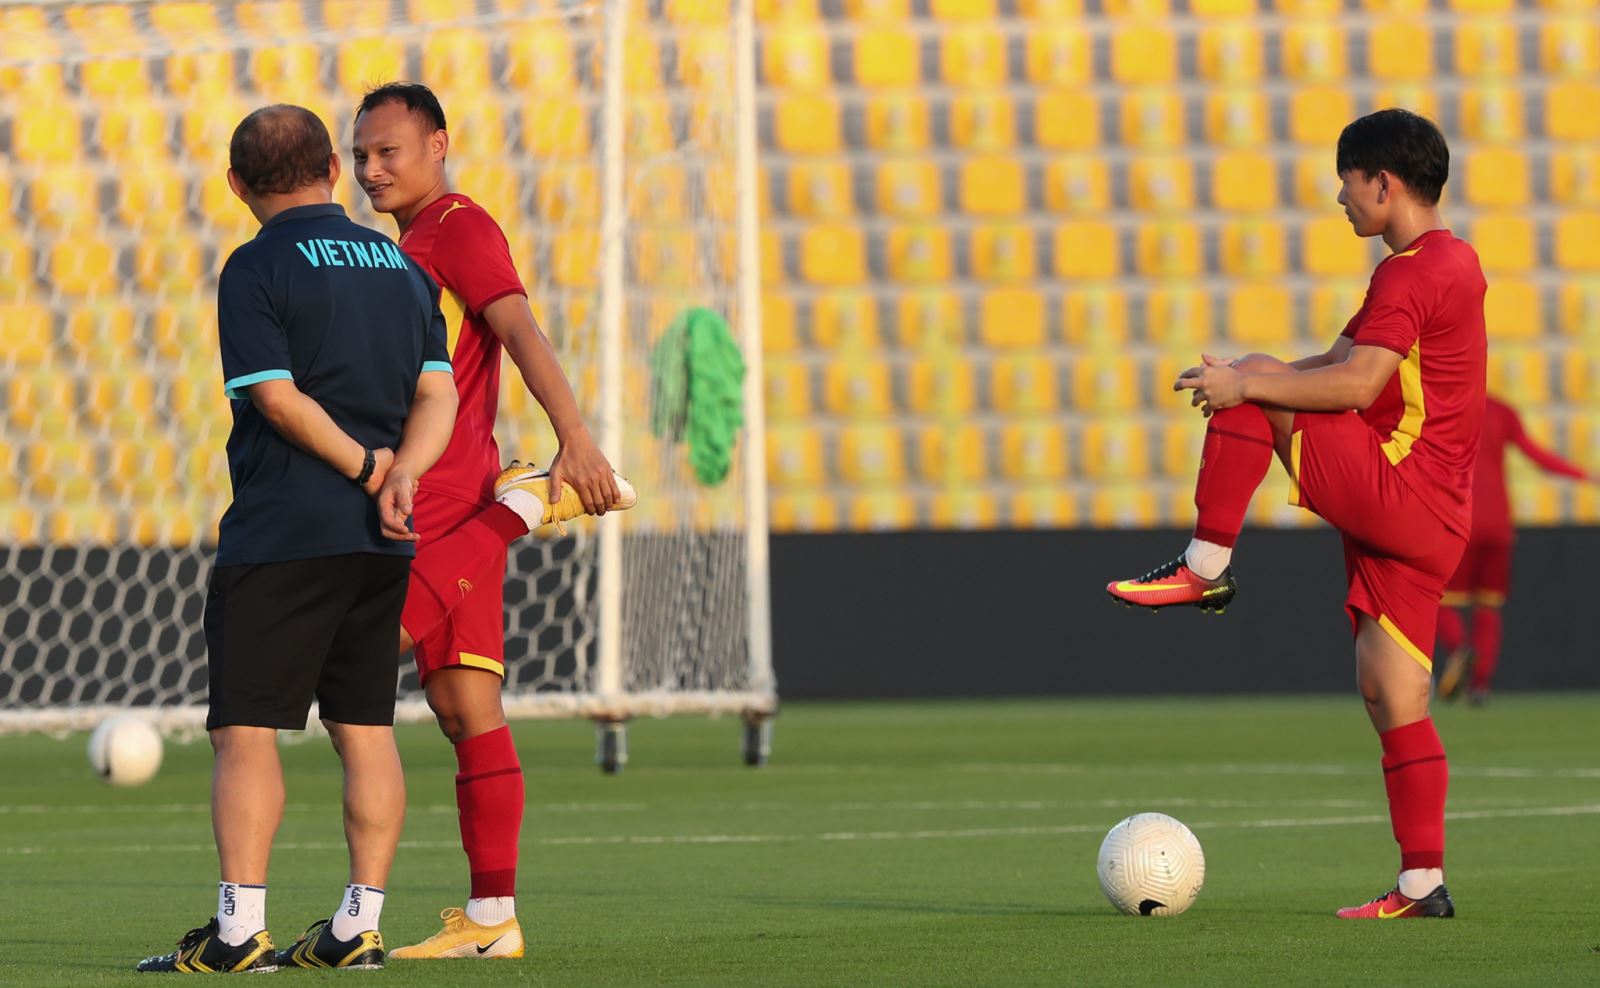 HLV Park Hang Seo sẽ có khoảng 3 tuần tập luyện để chuẩn bị cho đội tuyển Việt Nam ở vòng loại cuối cùng World Cup 2022. Ảnh: Hoàng Linh